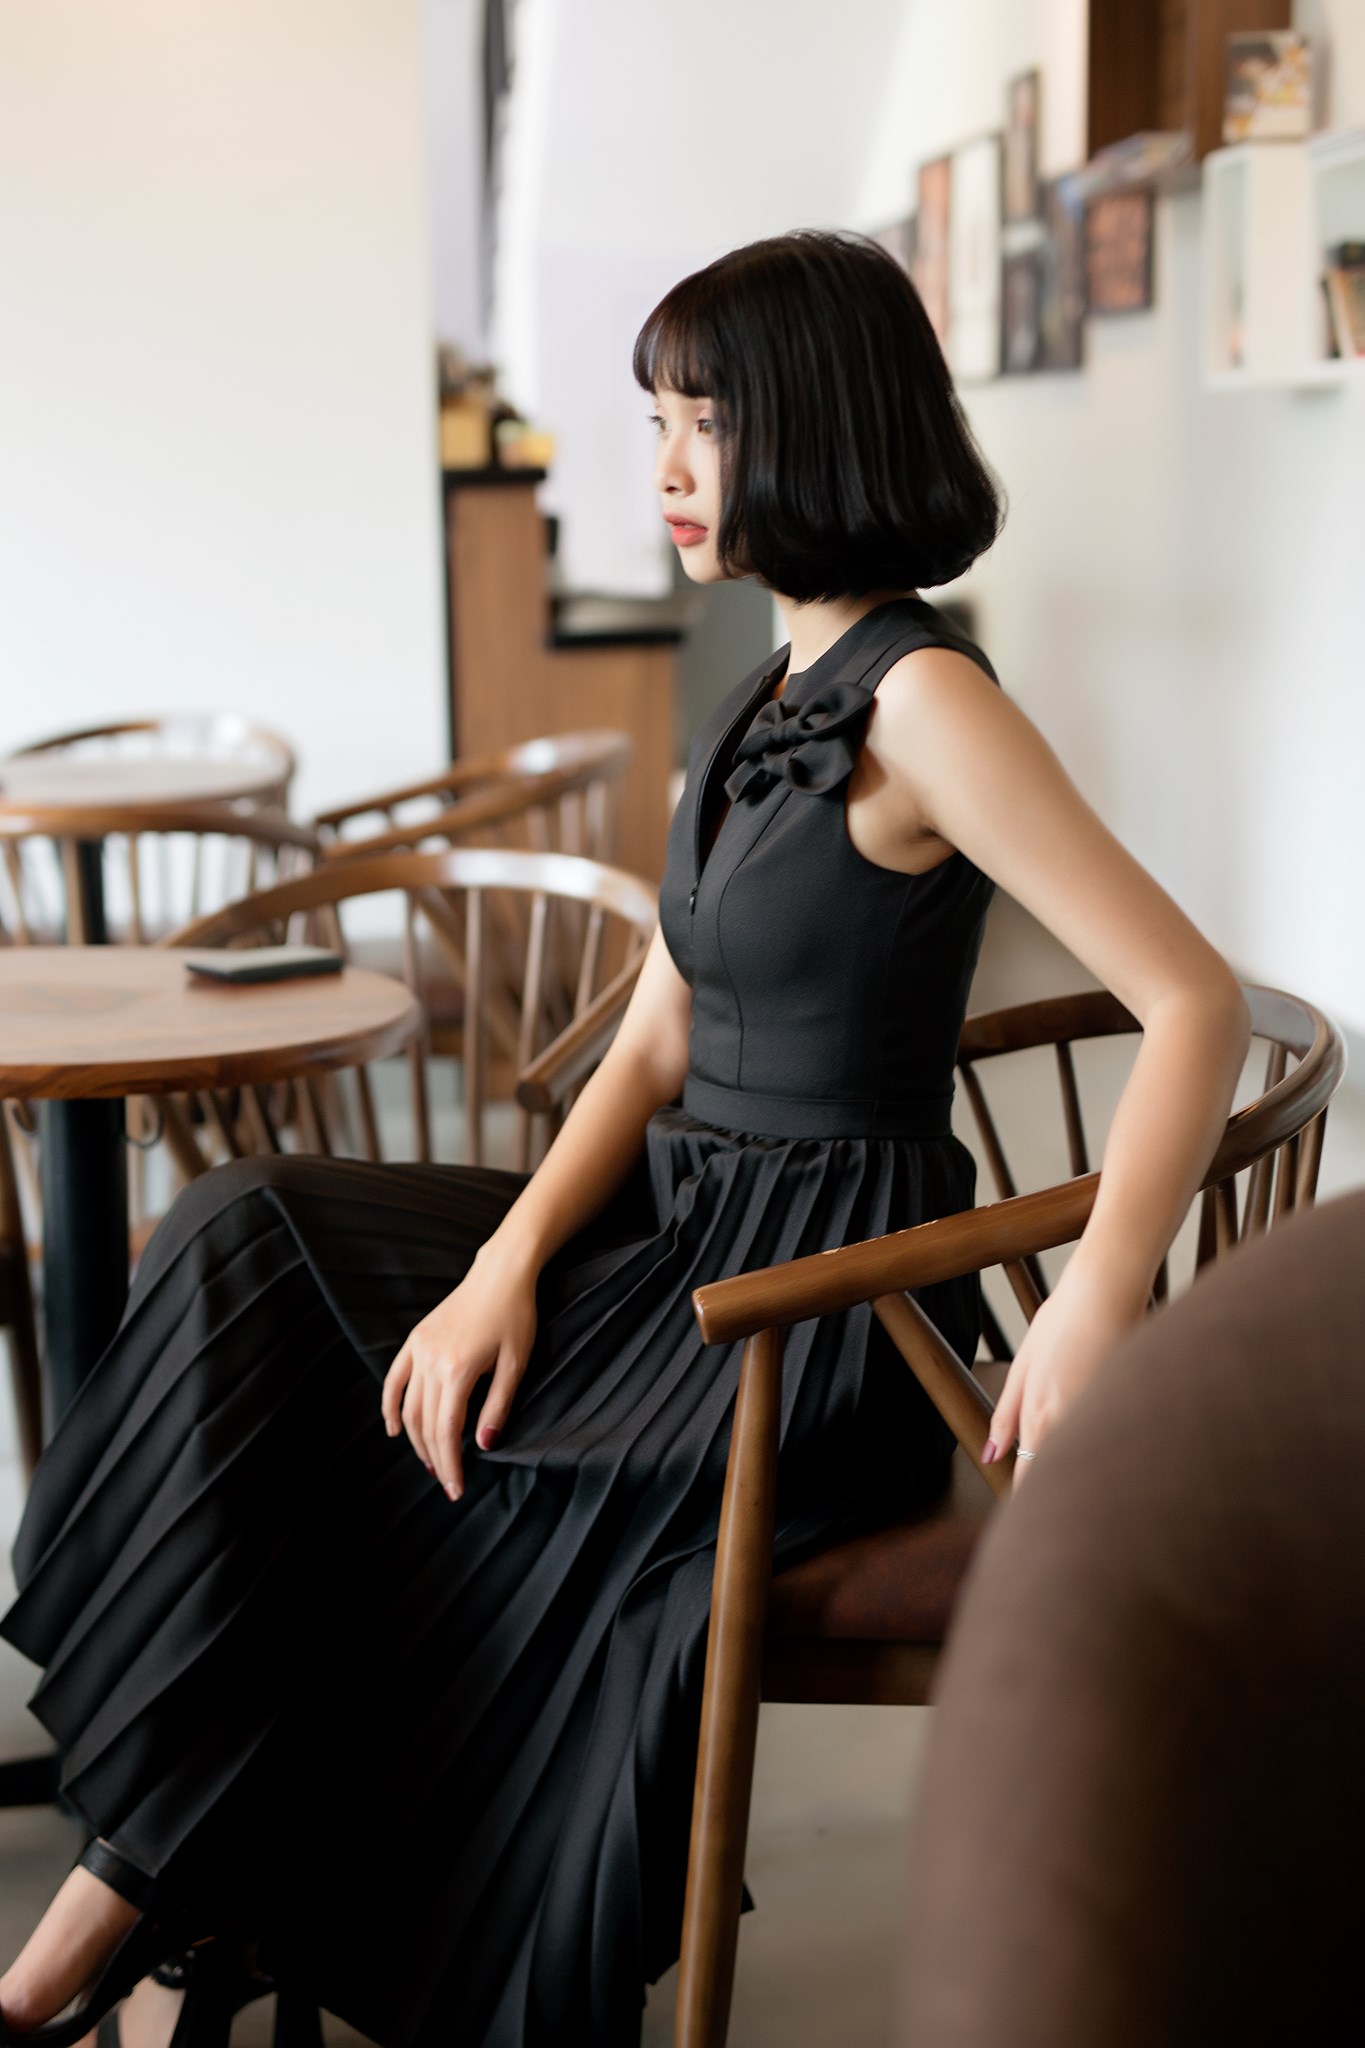 Little Black Dress” Hay Những Mẫu Đầm Đen “Must Have” Của Chị Em Công Sở